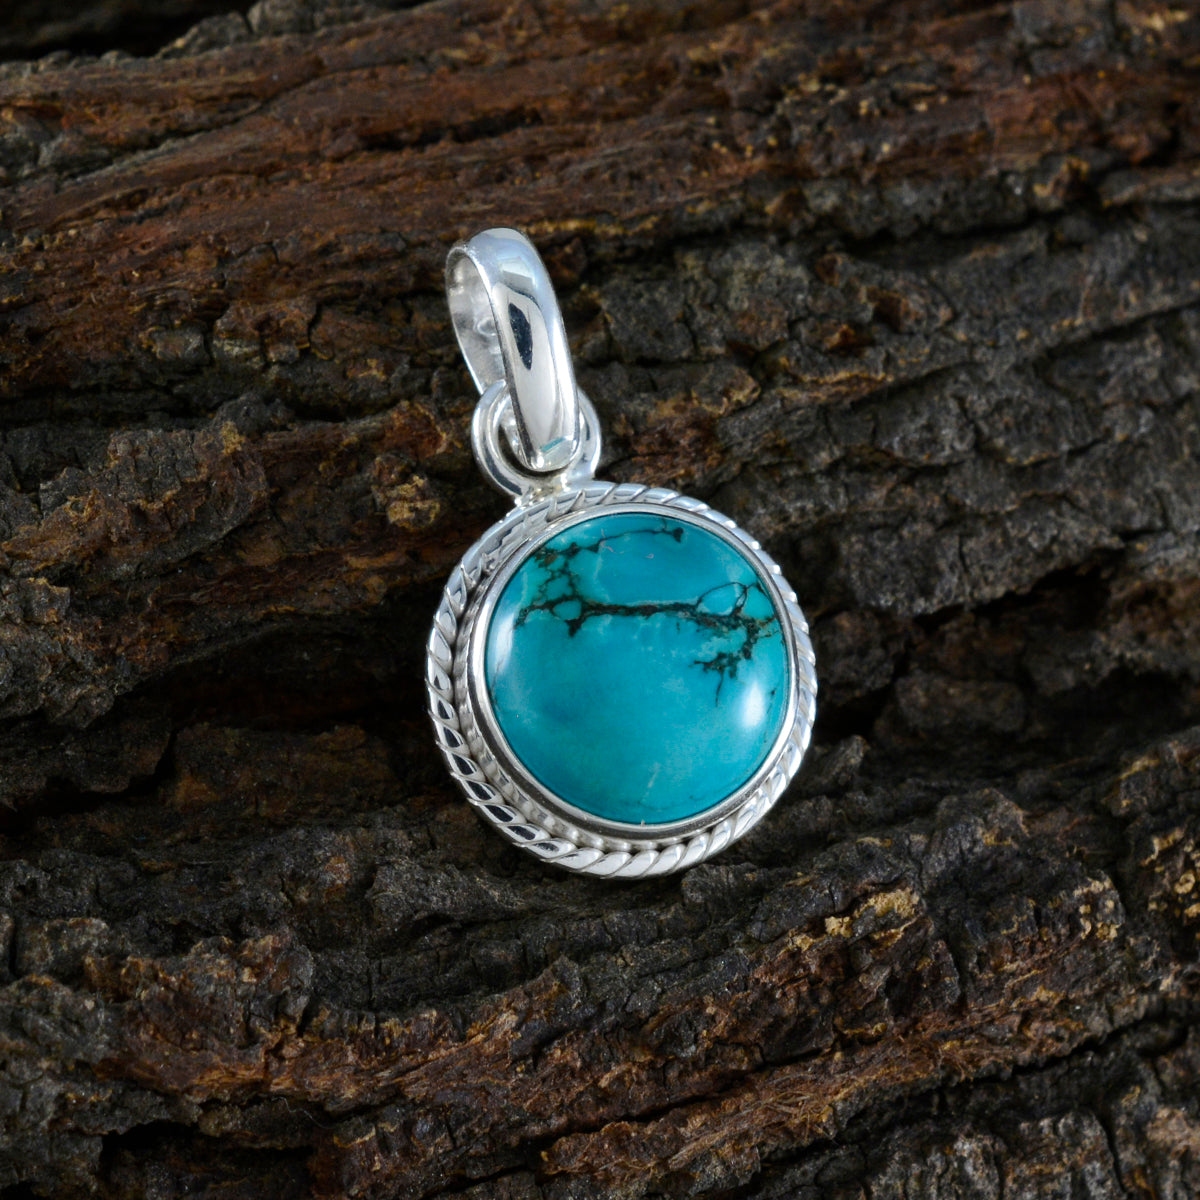 Riyo piedra preciosa celestial cabujón redondo azul turquesa colgante de plata de ley regalo para hecho a mano